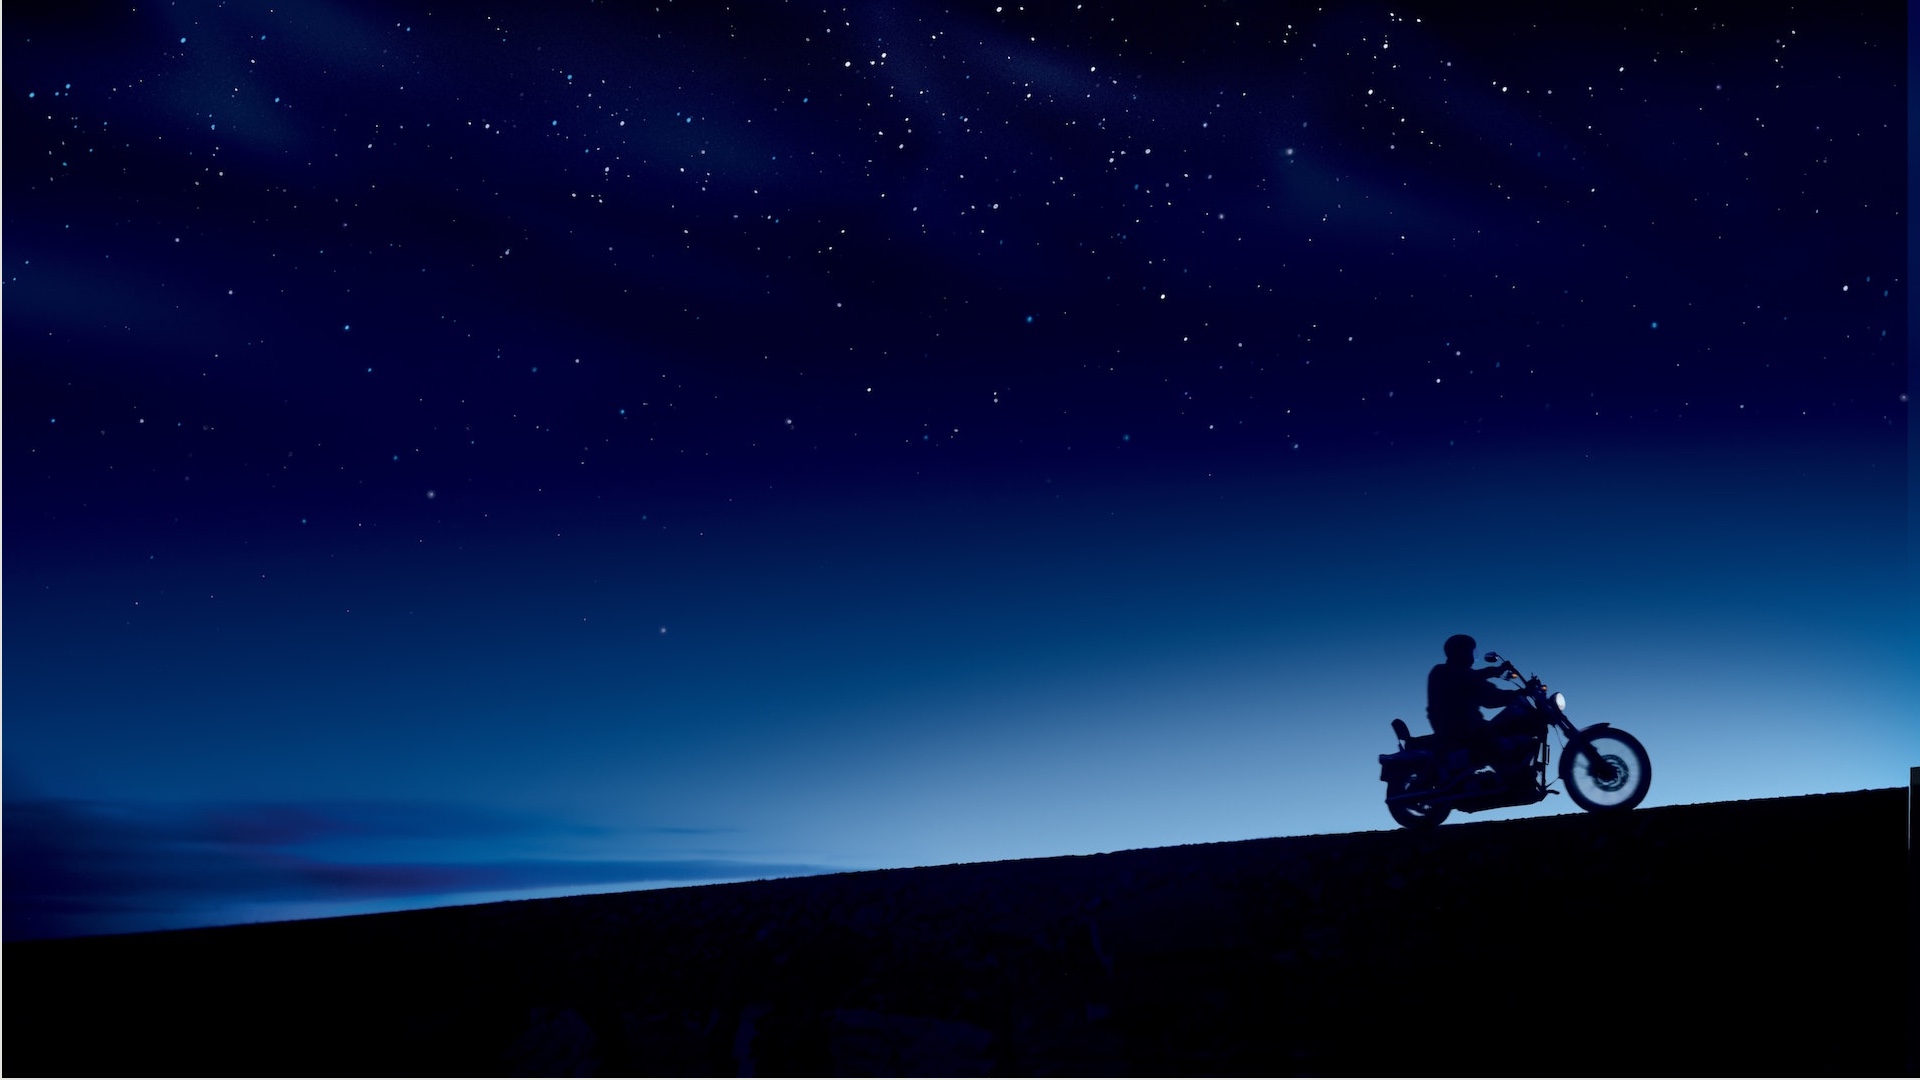 夜明けのバイクの無料バーチャル背景素材